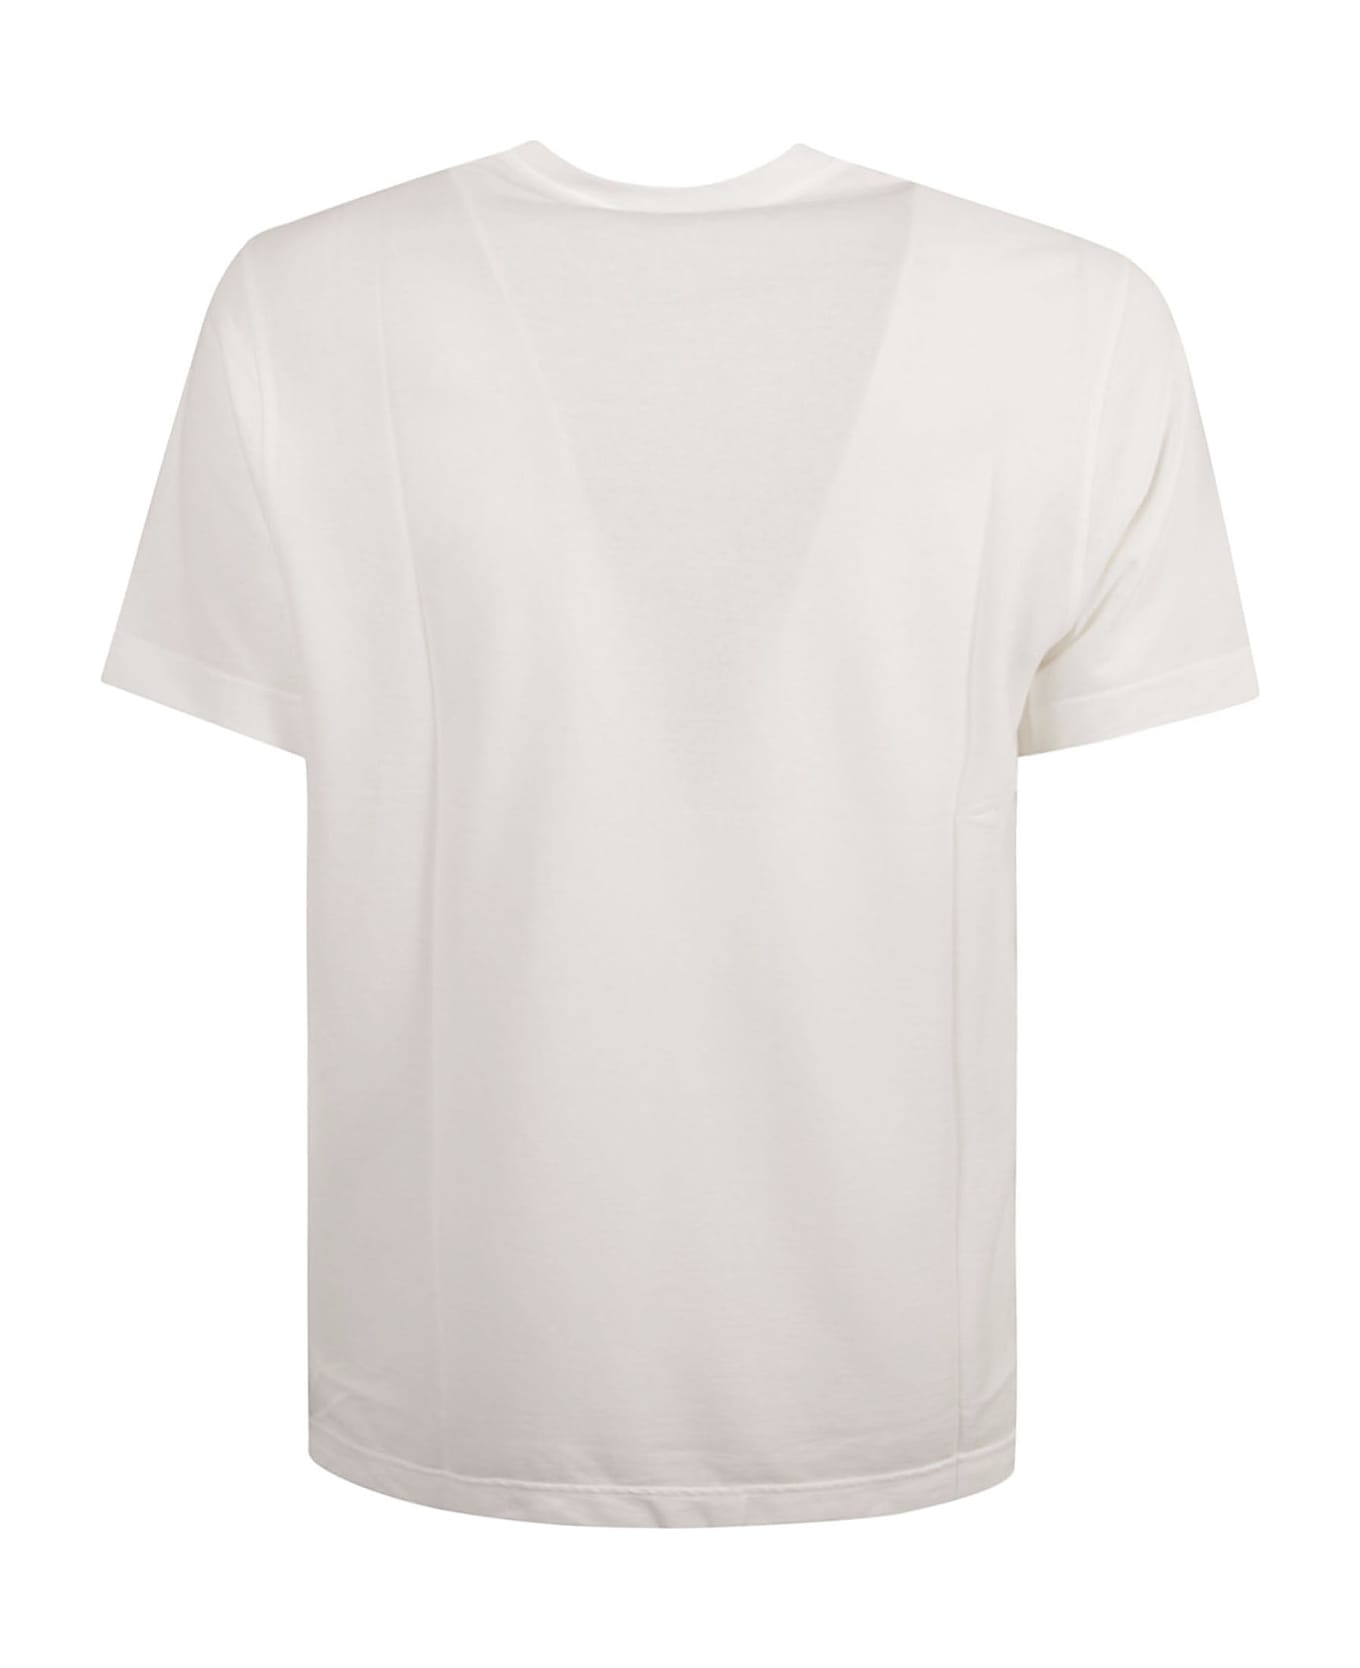 Zanone Round Neck Plain T-shirt - White Ottico